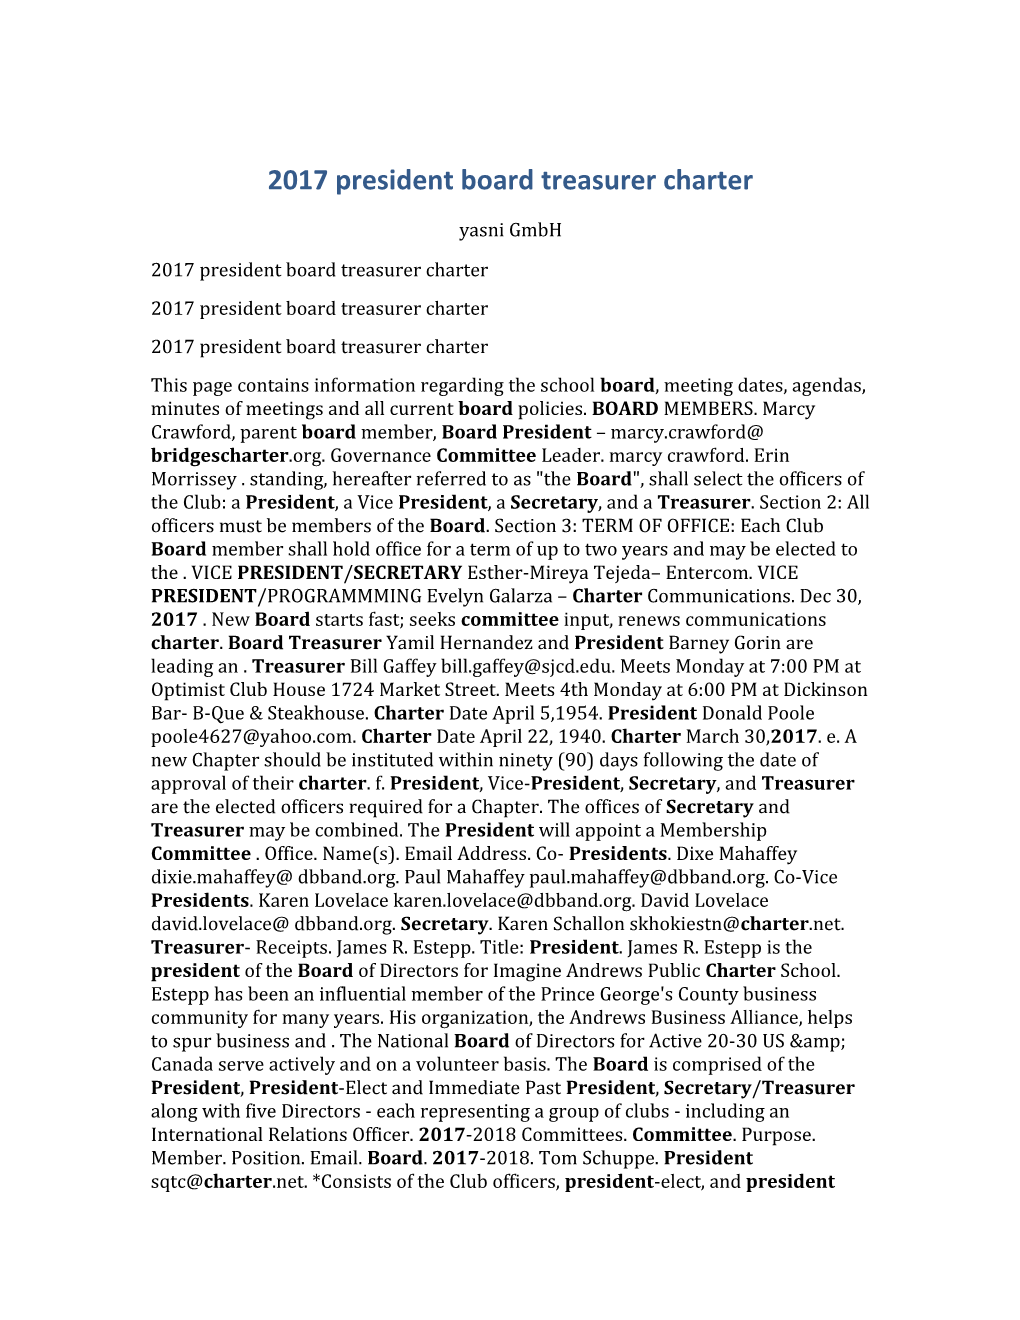 2017 President Board Treasurer Charter